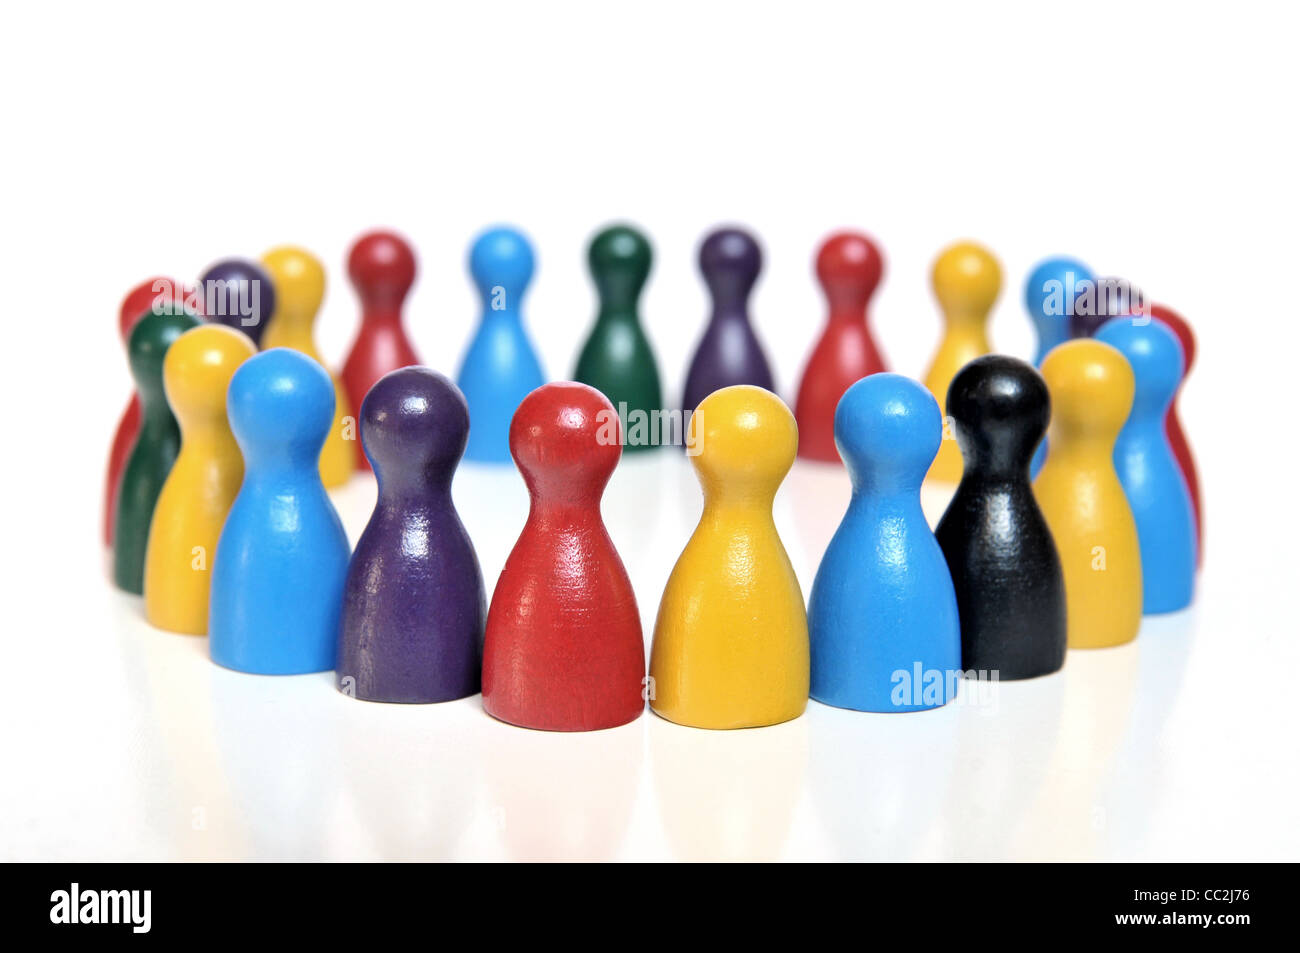 Forum de discussion de figurines multicolores sur fond blanc Banque D'Images